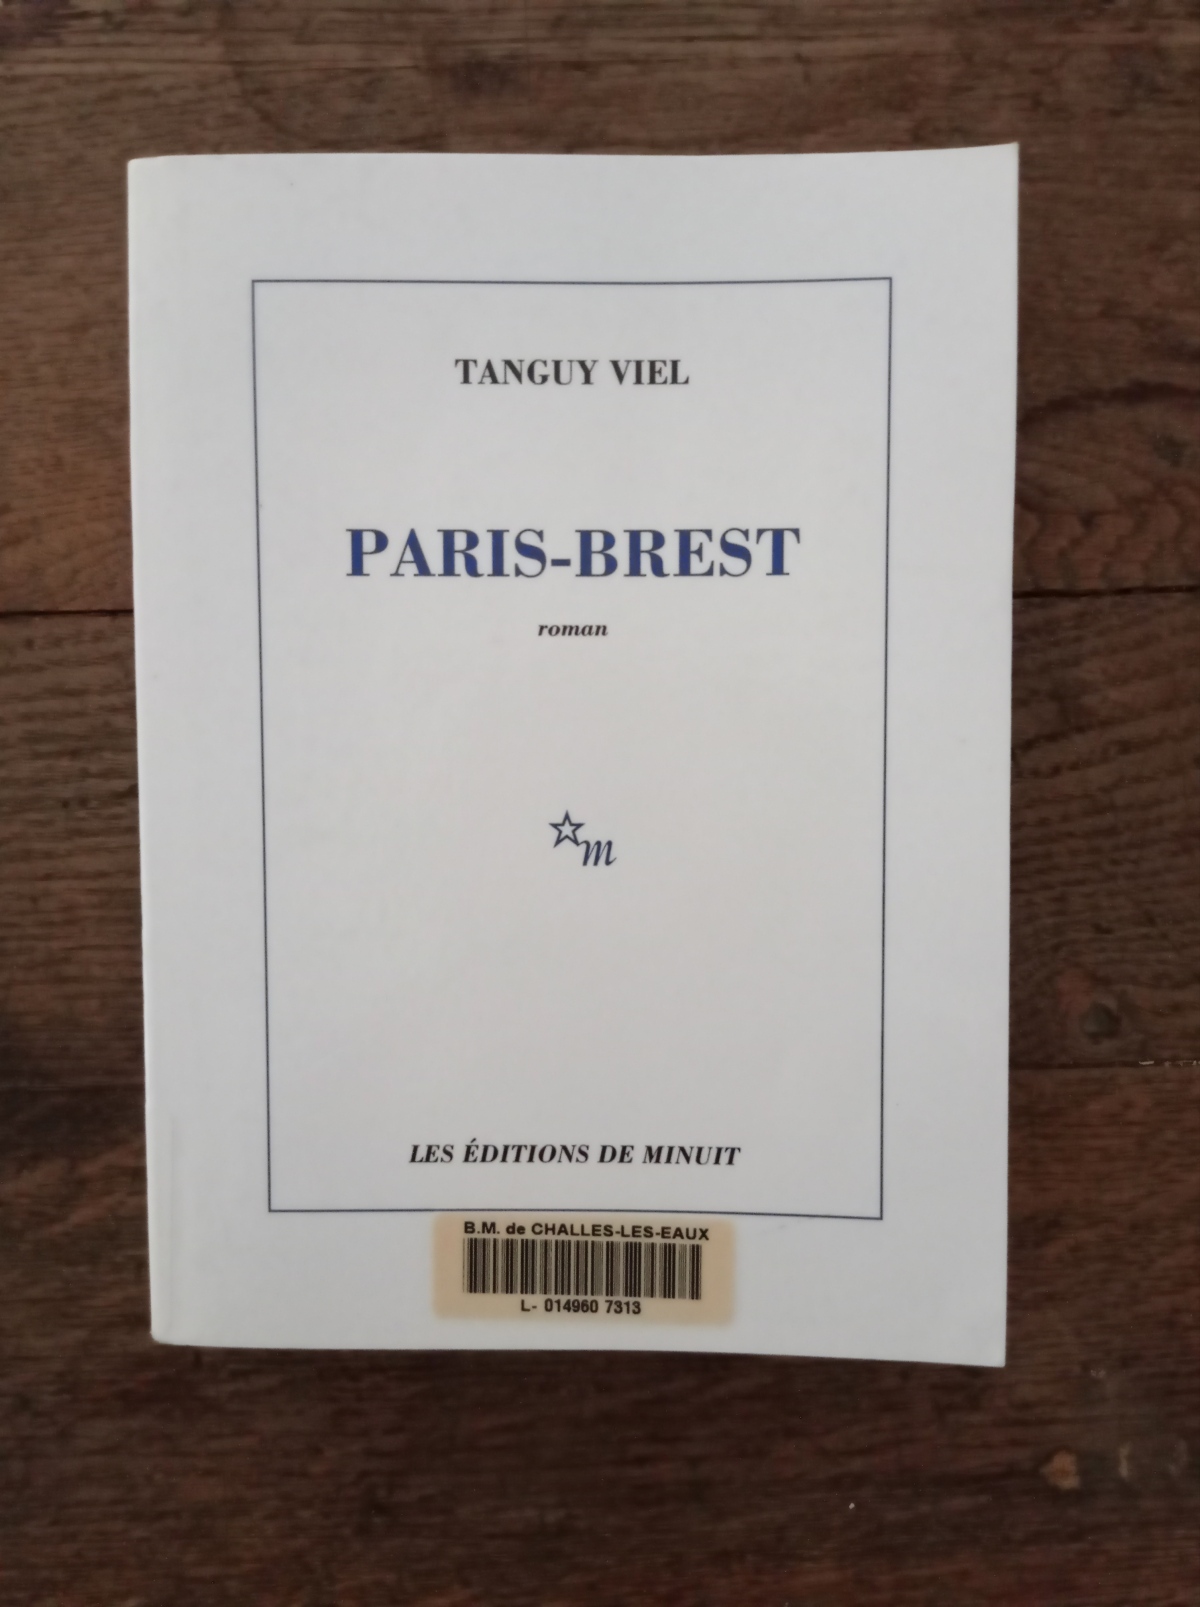 Paris-Brest / Tanguy Viel